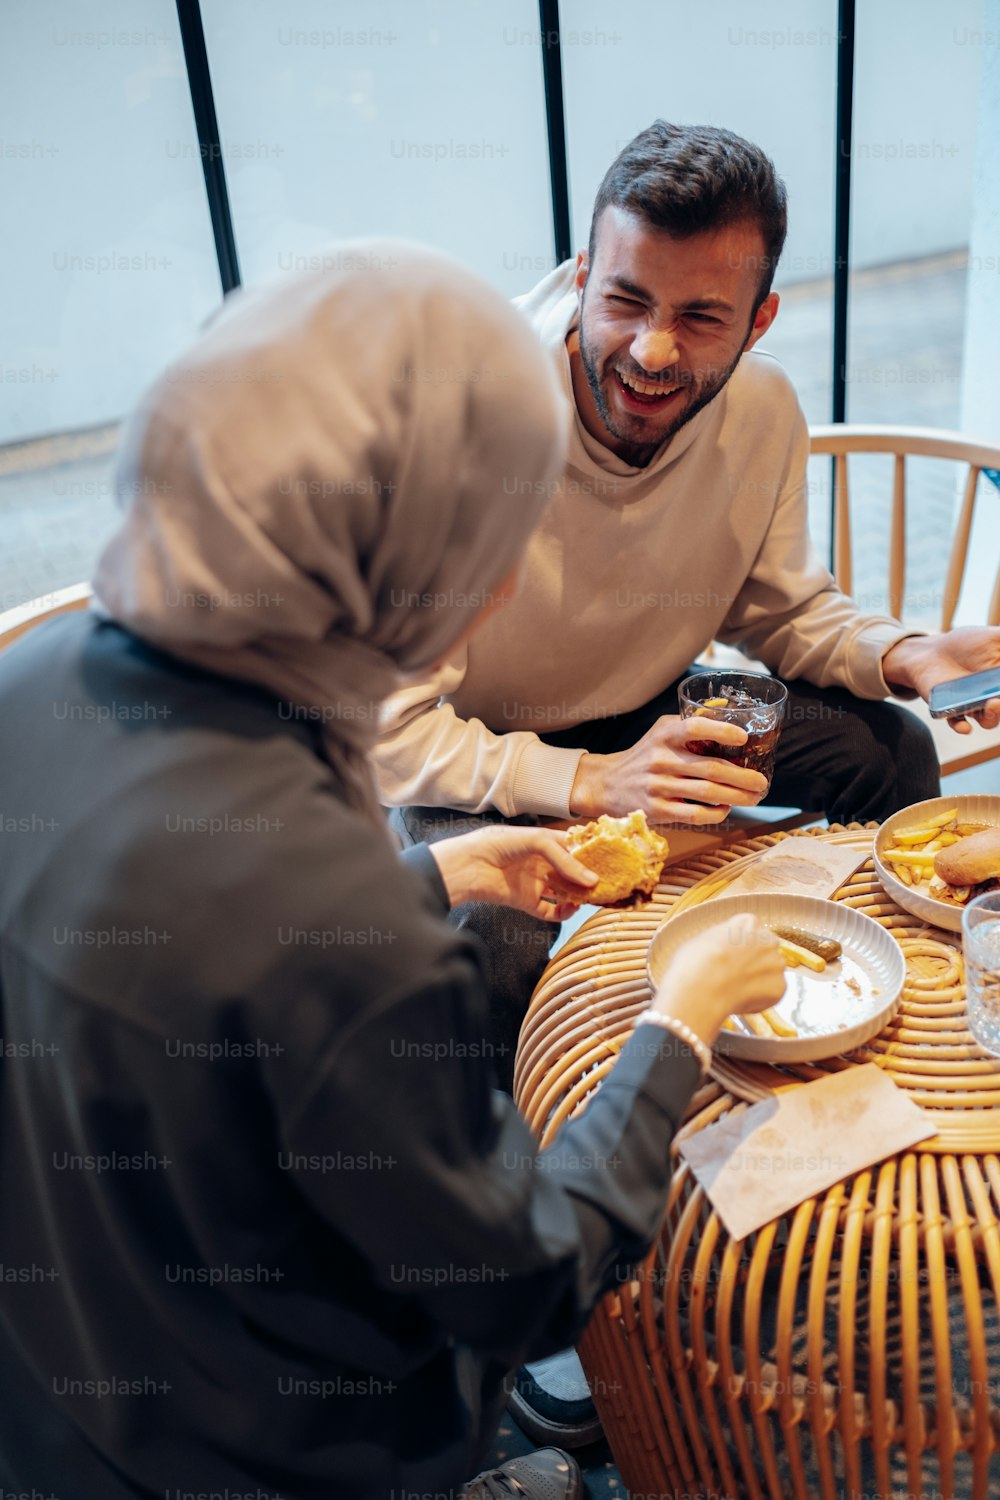 Un homme et une femme assis à une table partageant un repas